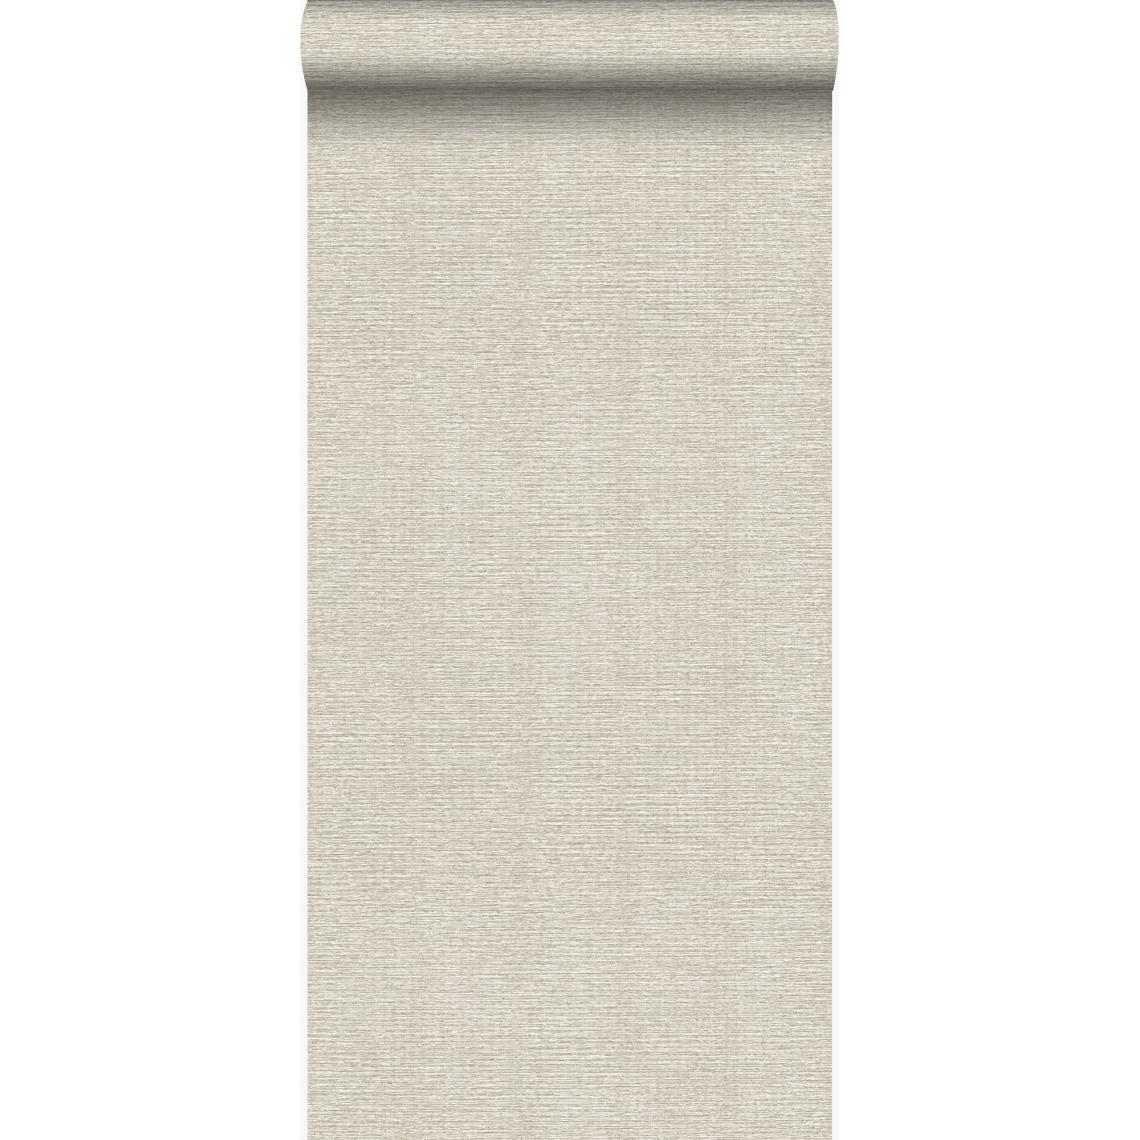 Origin - Origin papier peint lin sable beige - 347375 - 53 cm x 10,05 m - Papier peint